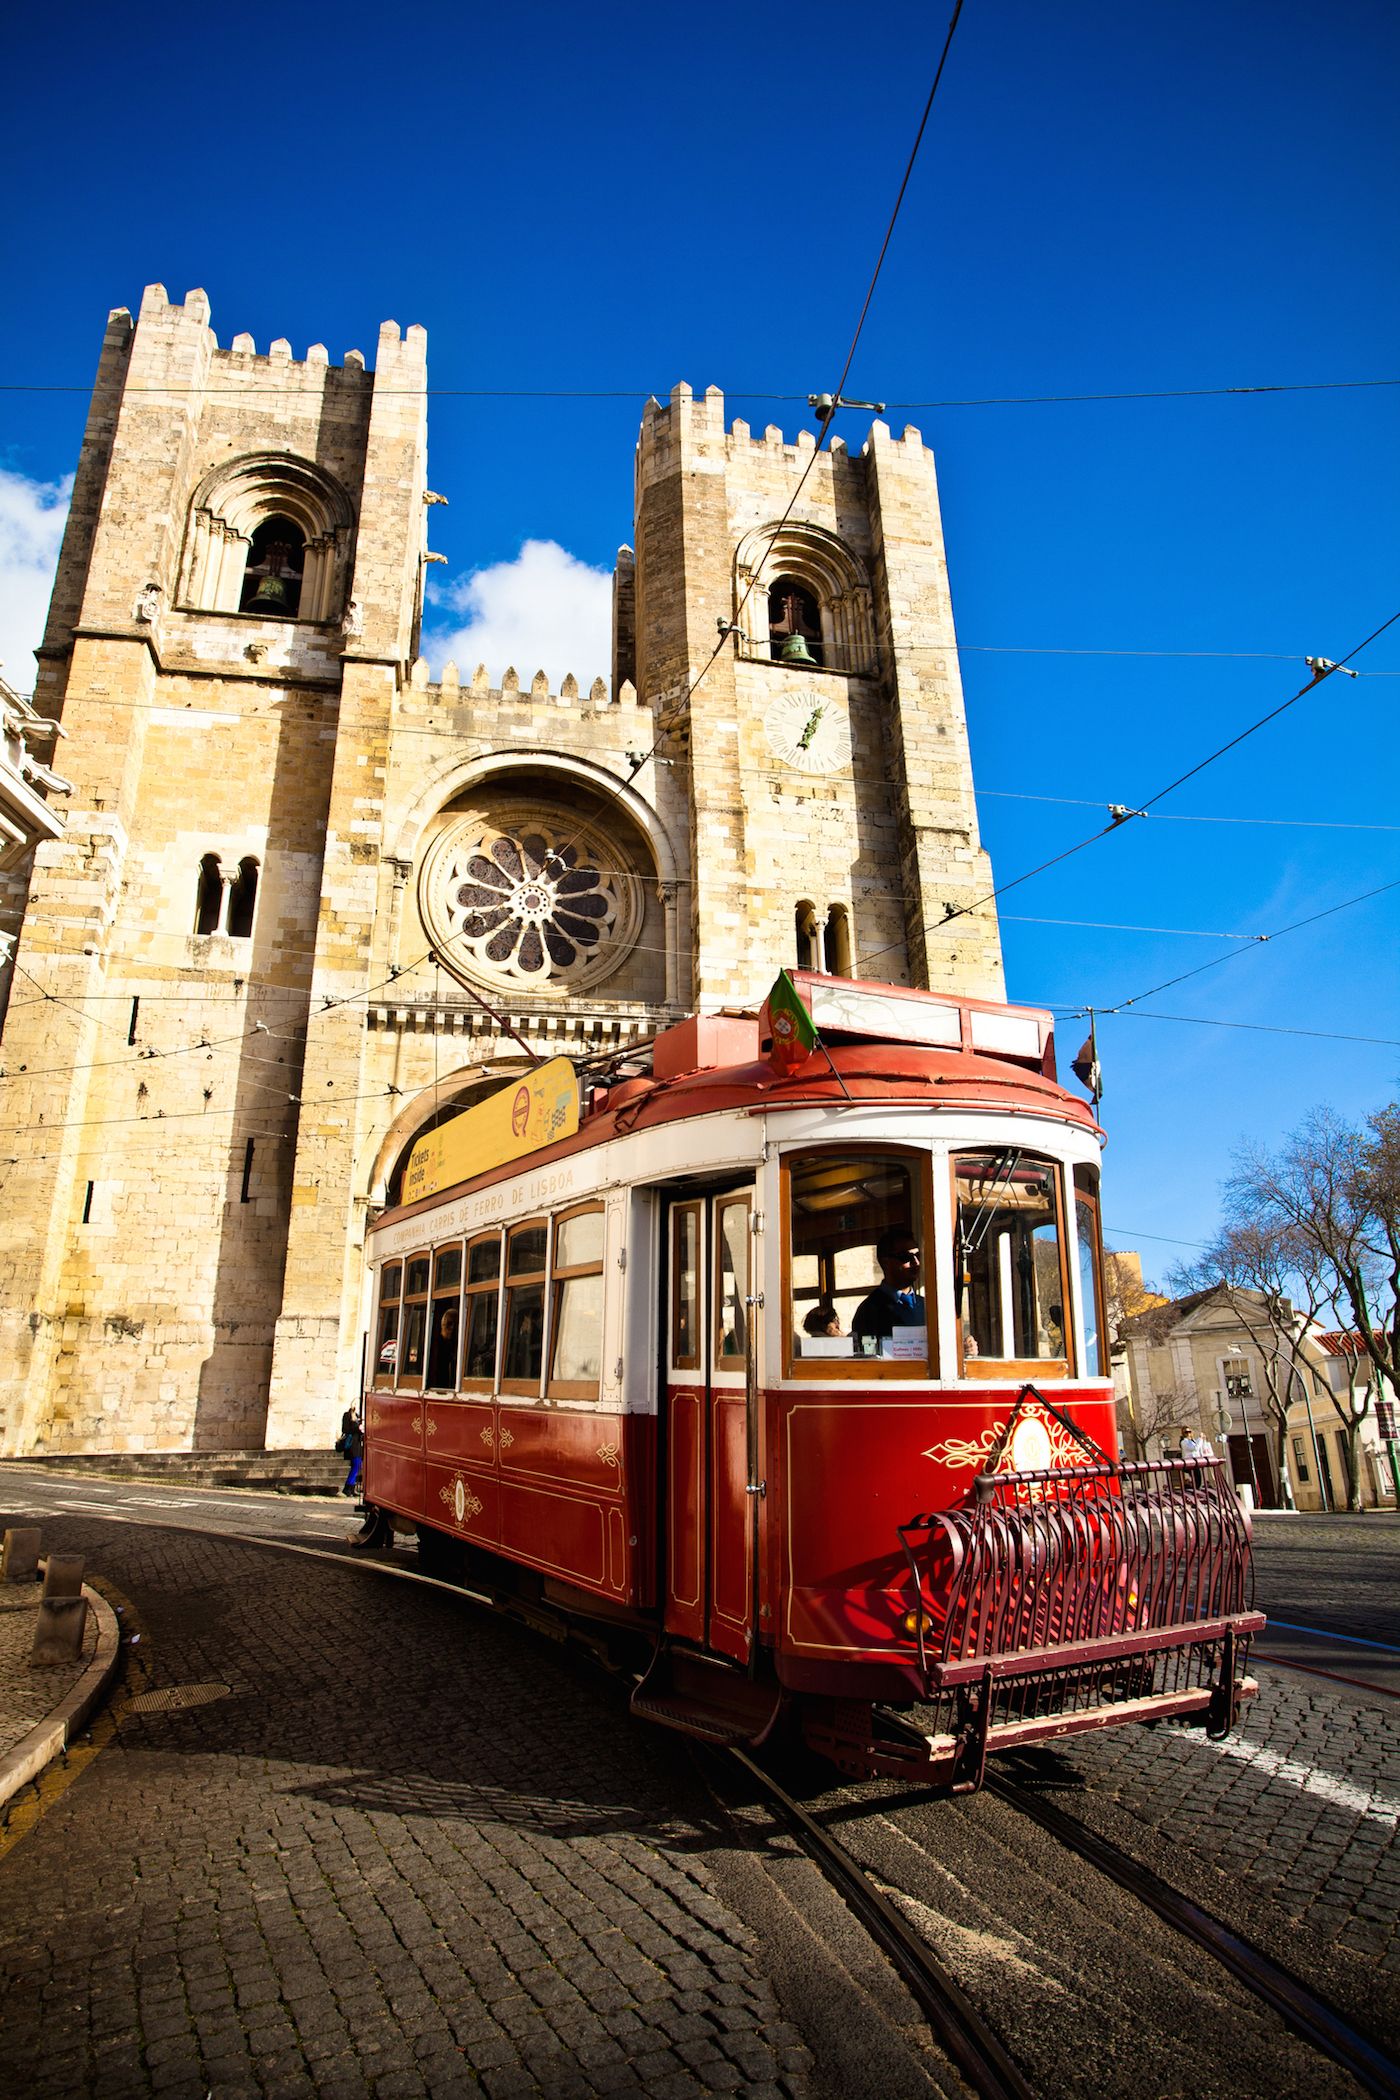 Lisbona in un week end: le 10 cose imperdibili da vedere e da fare